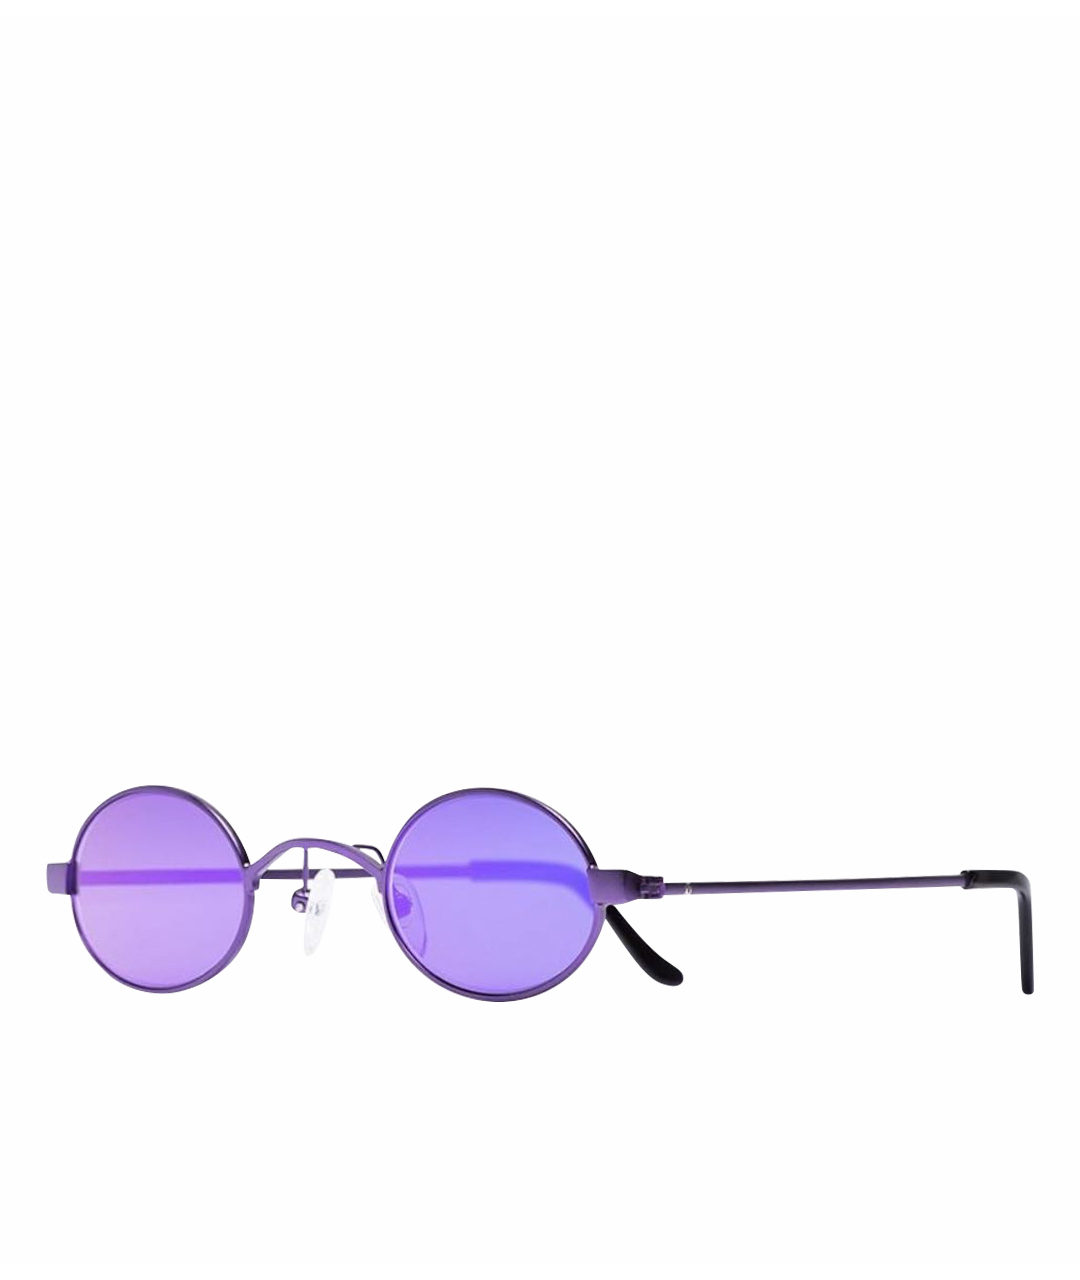 ROBERI&FRAUD Фиолетовые солнцезащитные очки, фото 1